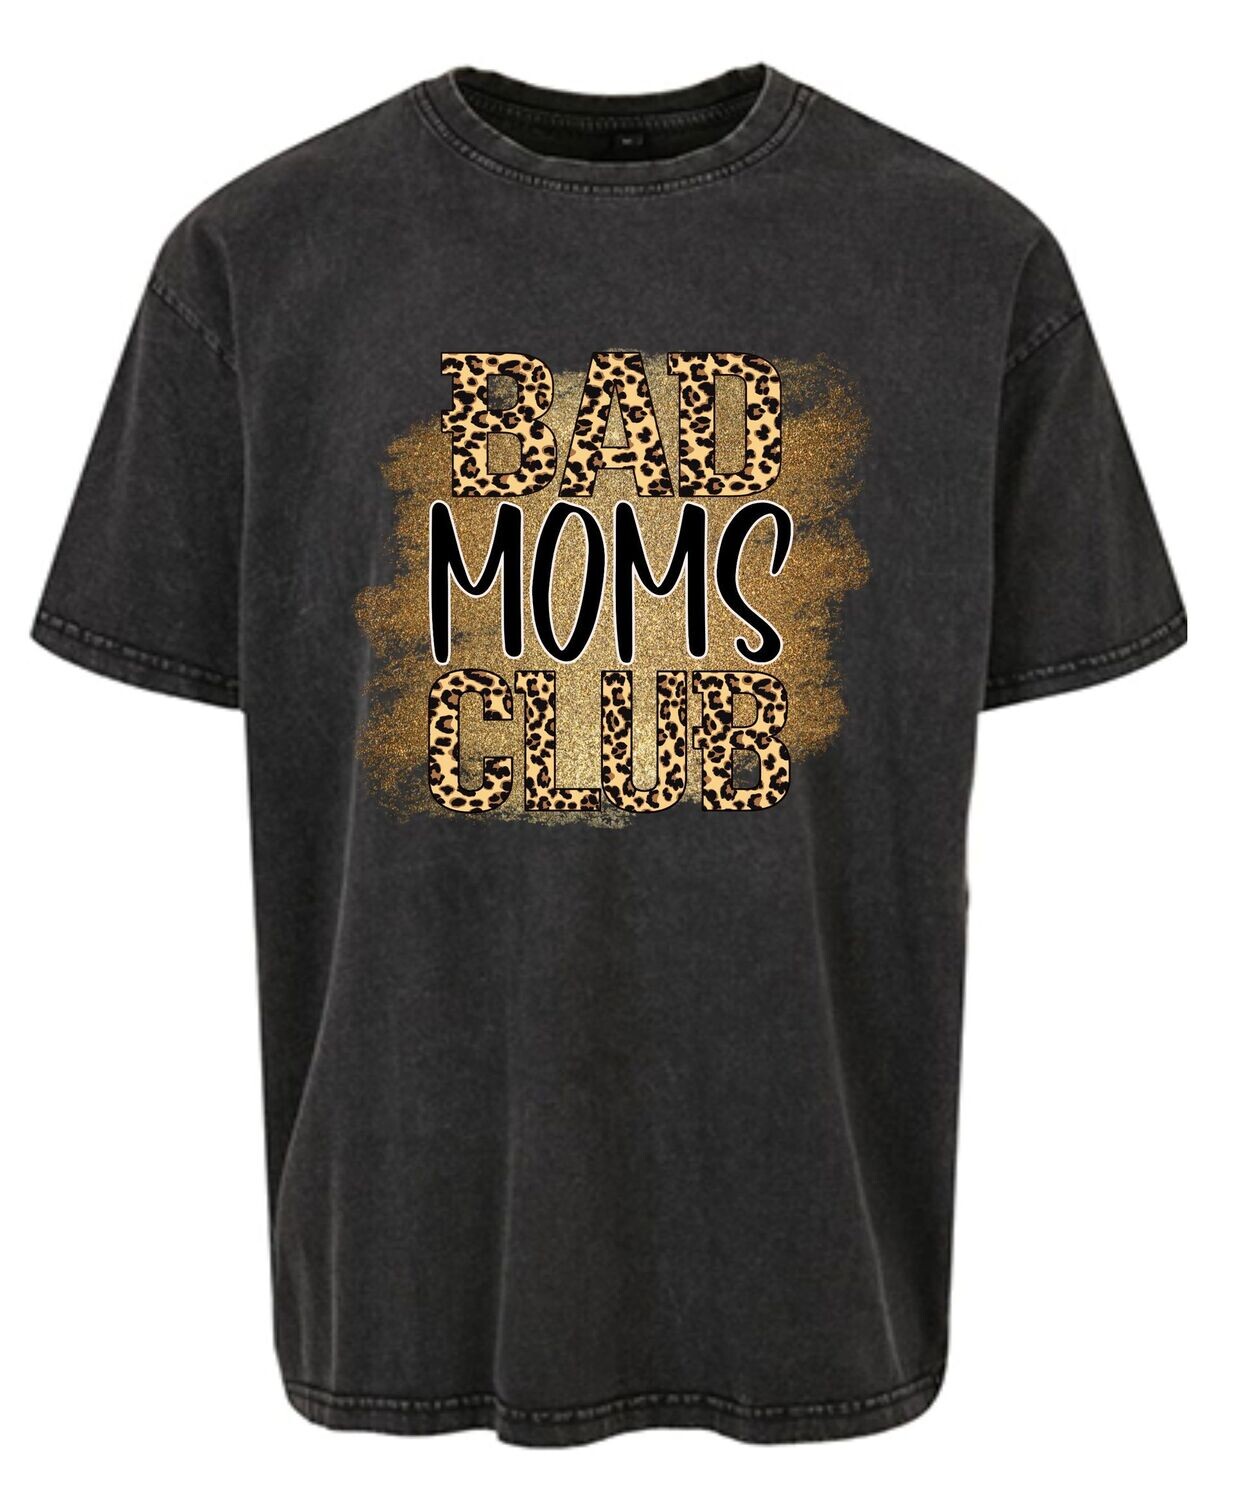 Unisex Oversize Shirt Bad Moms Club